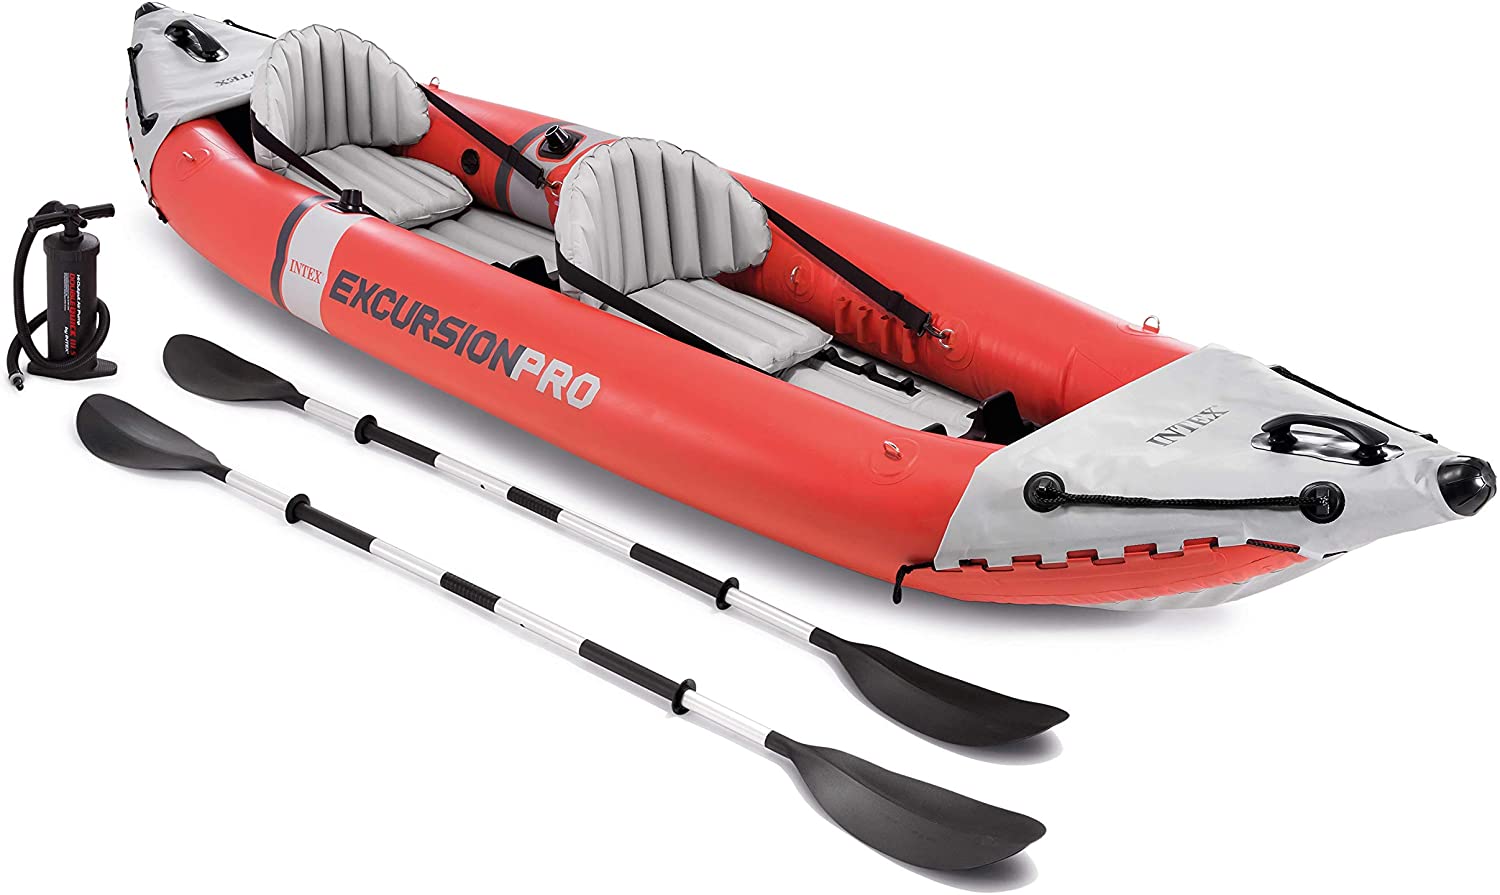 Intex-excursion-pro-kayak-series